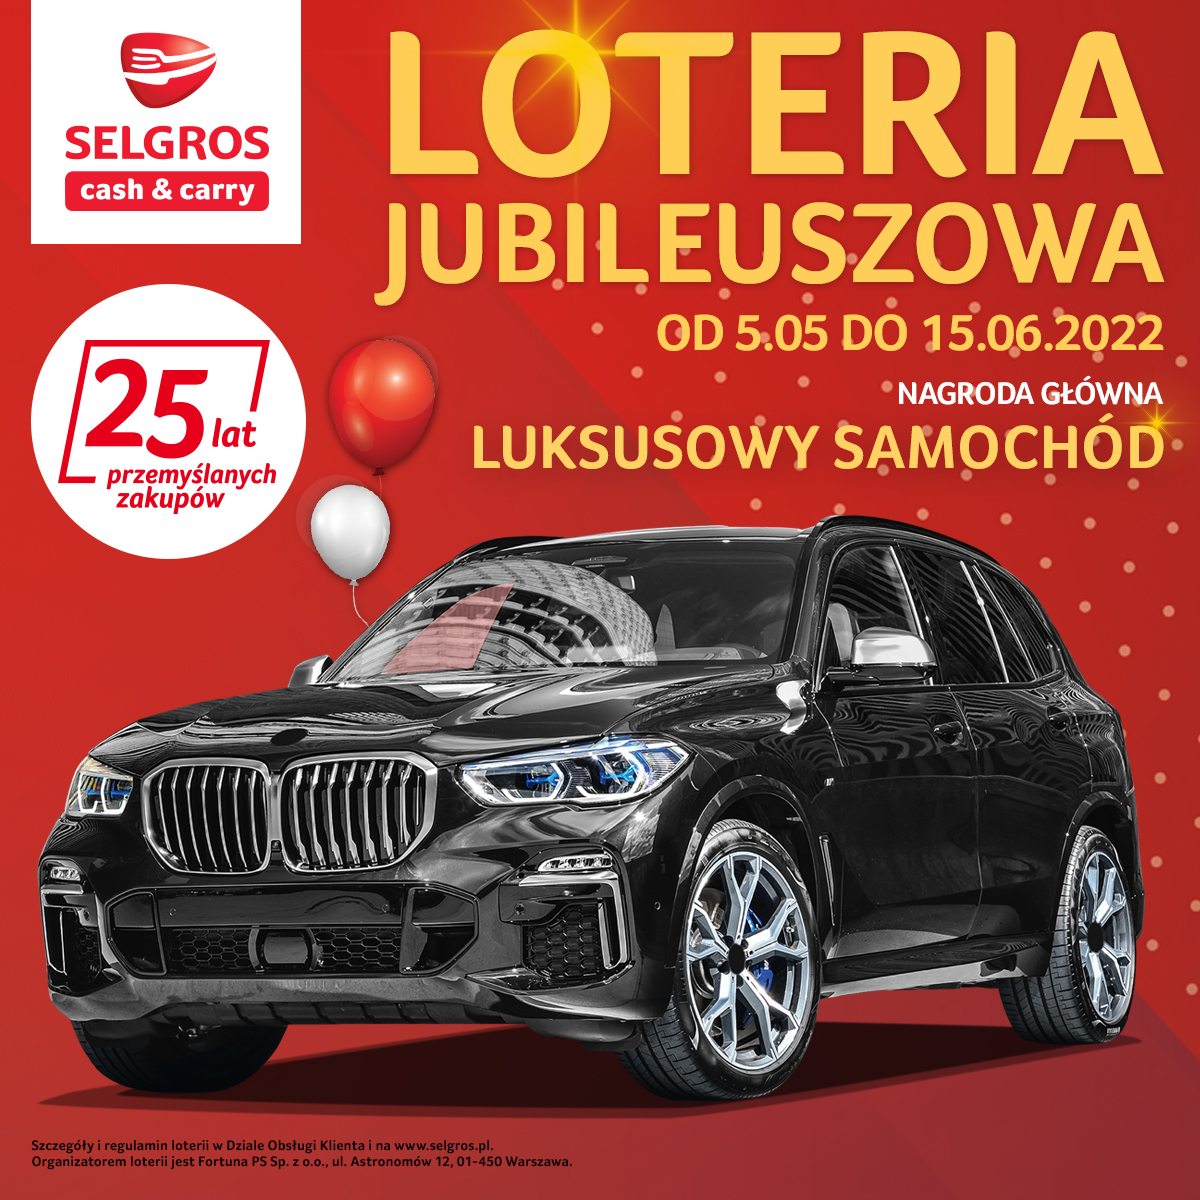 Selgros Cash & Carry wyjątkową loterią świętuje swoje 25-lecie w Polsce